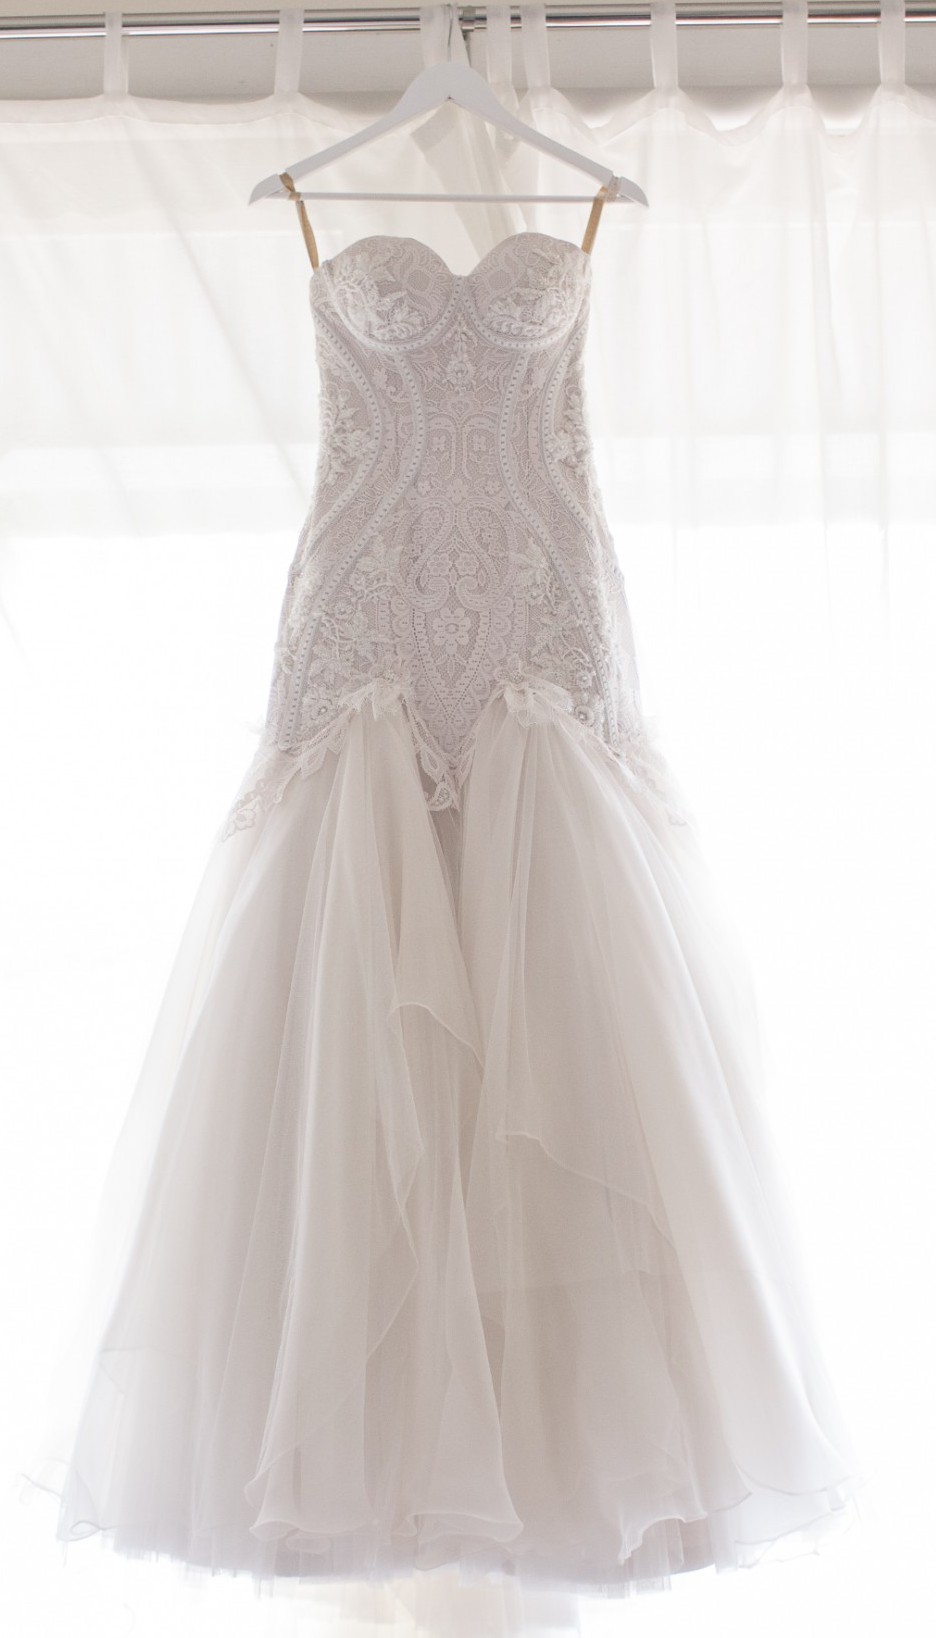 Mariana Hardwick Angelette Second Hand Wedding Dress Save 86% - Stillwhite